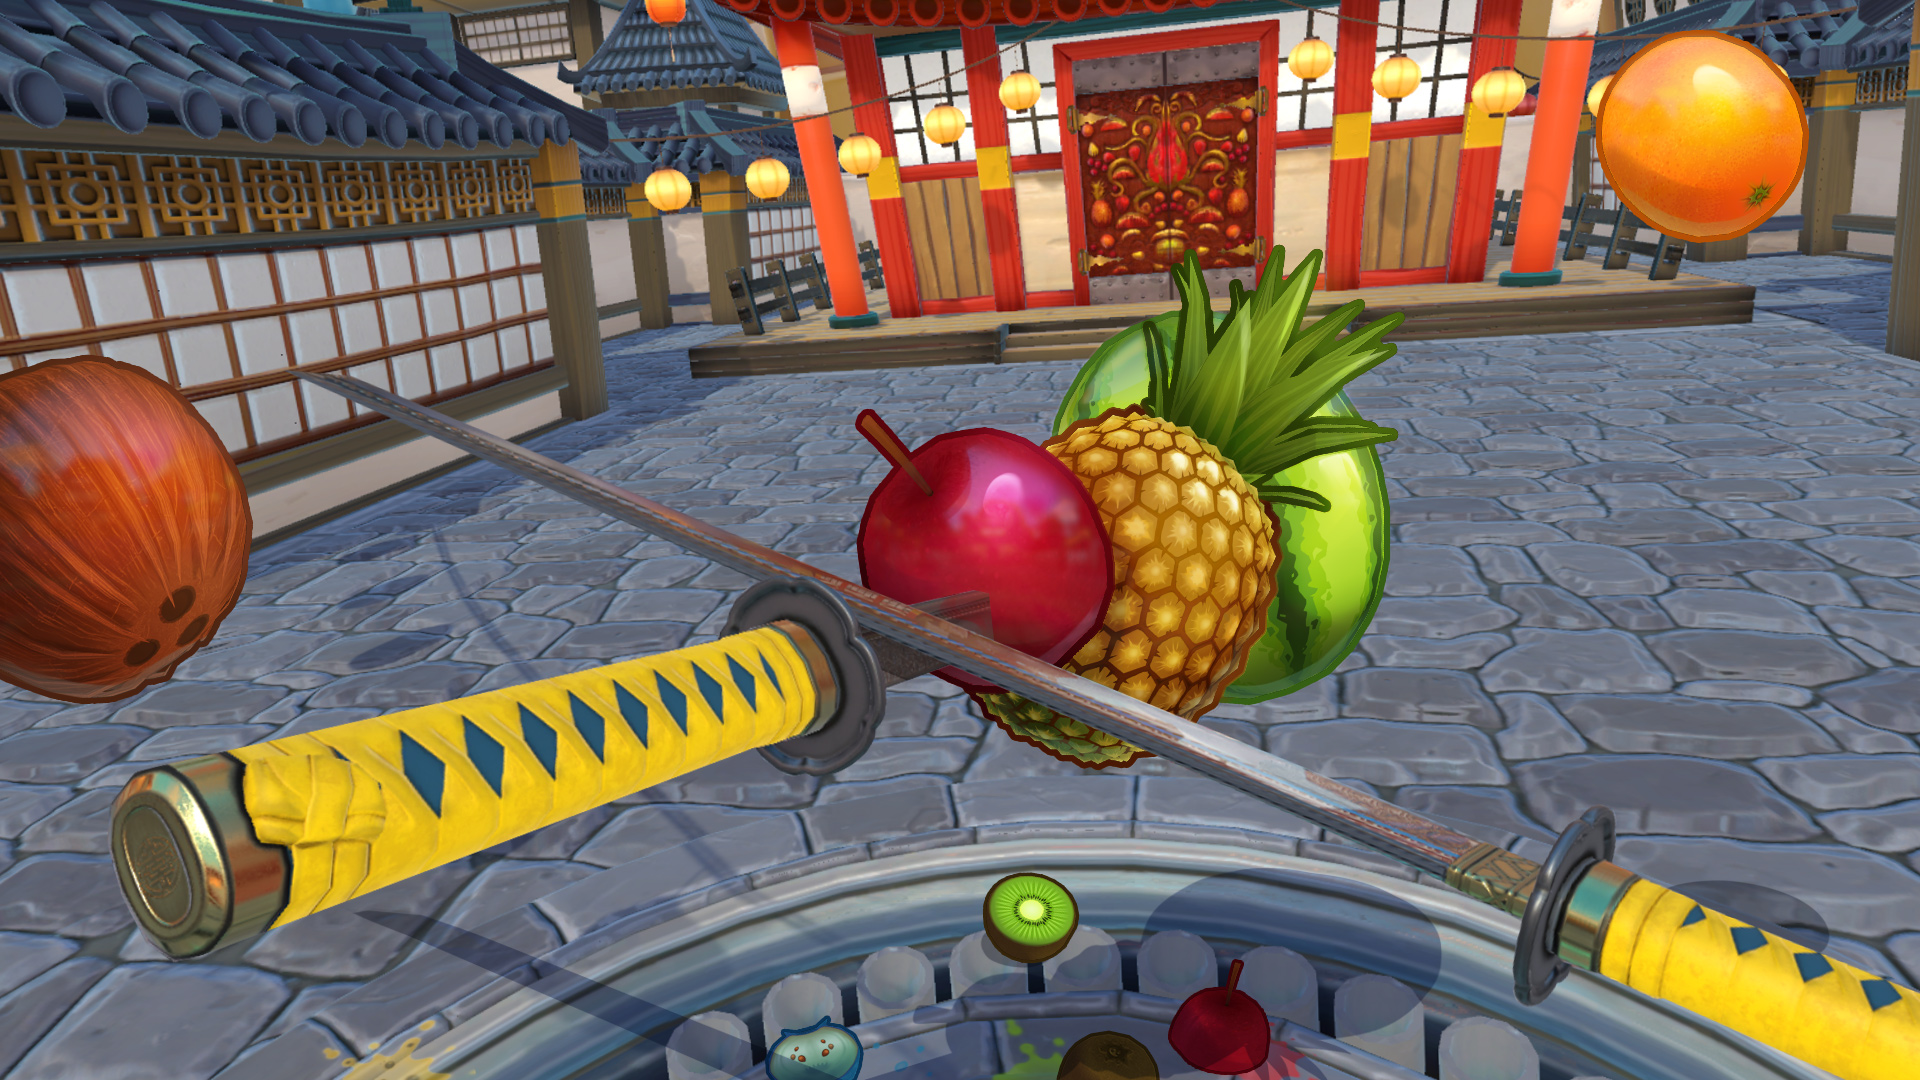 Review: Fruit Ninja Kinect 2